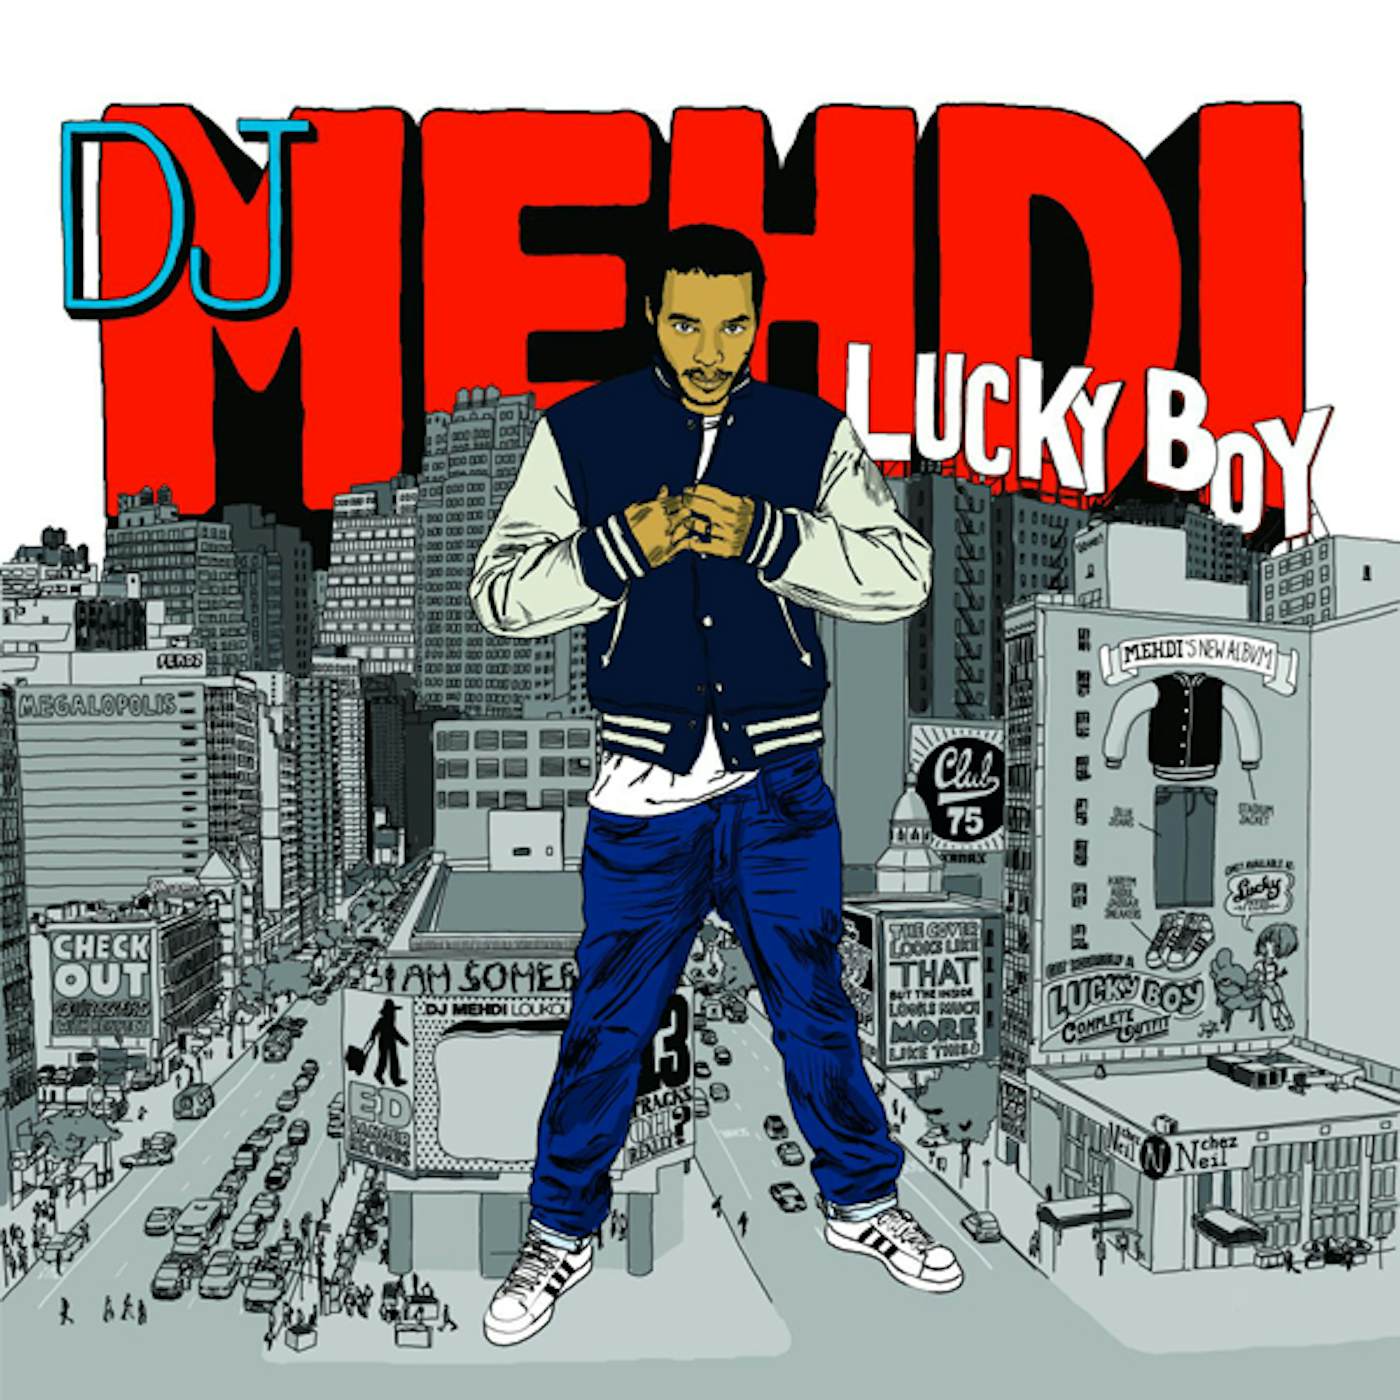 DJ Mehdi lucky boy Vinyl Record